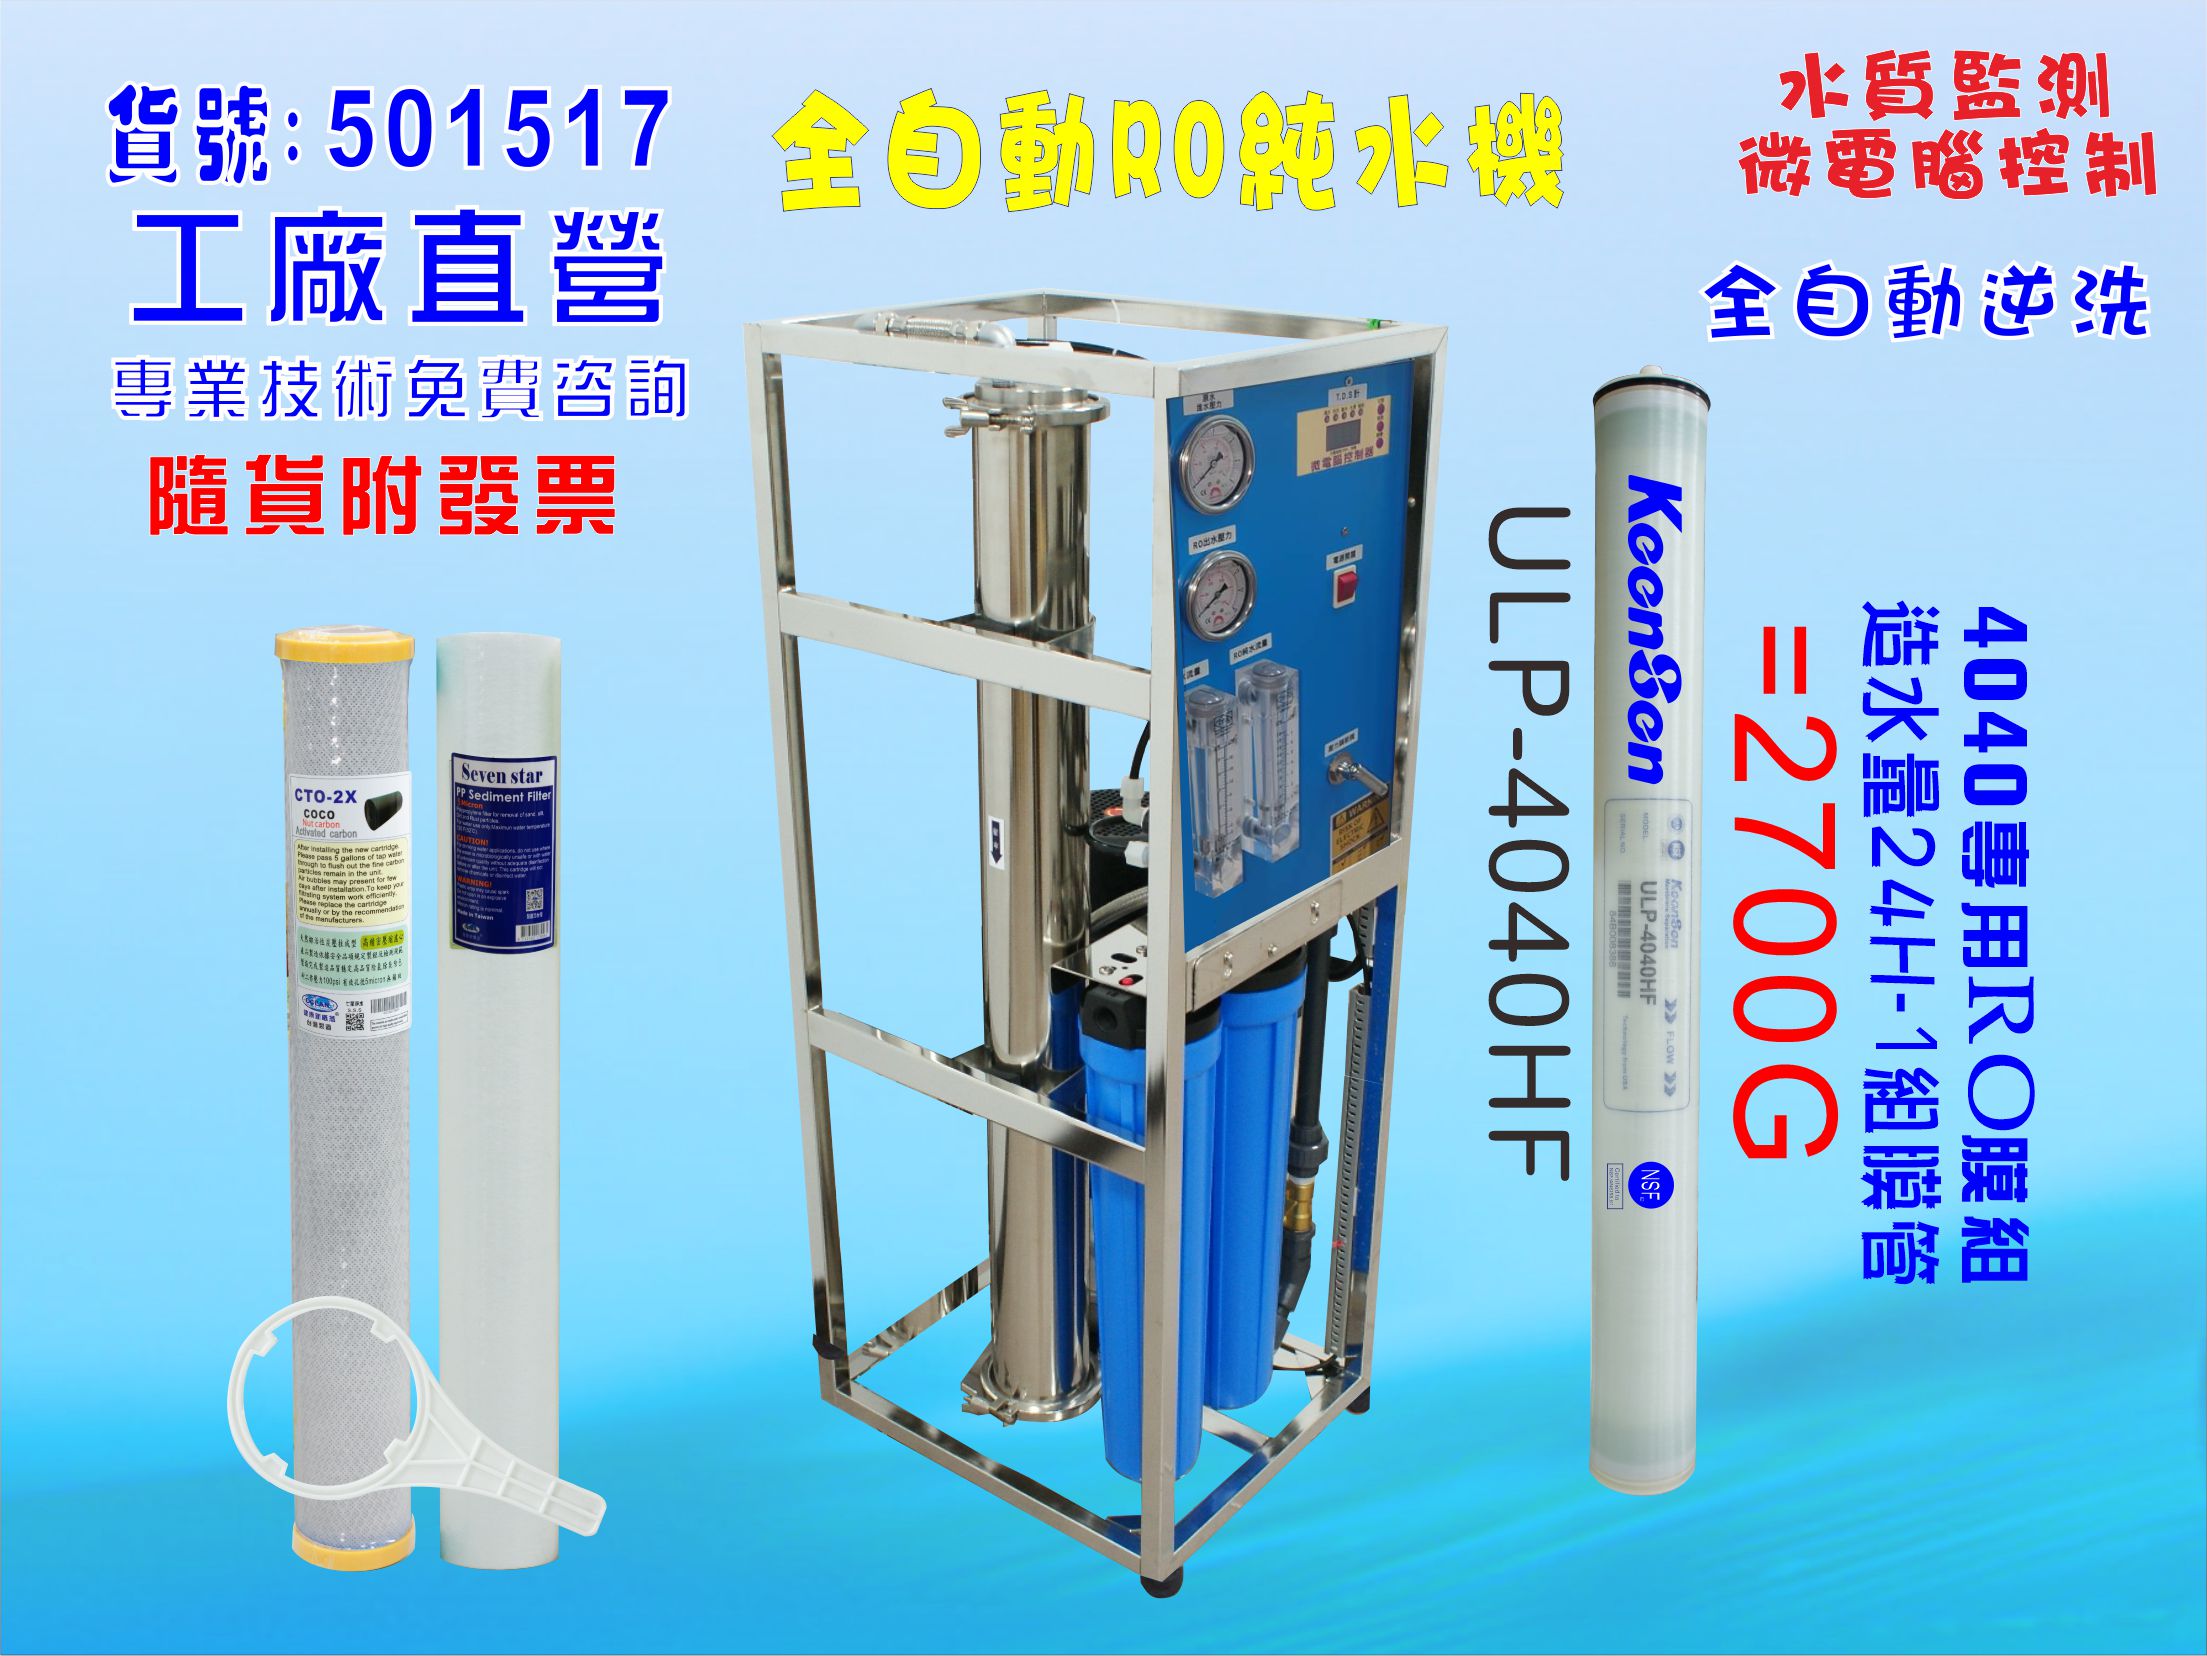 工業型RO純水機1500加機型升級裝置2700GRO逆滲透膜 (自動水質偵測)NO:601517【七星淨水網】